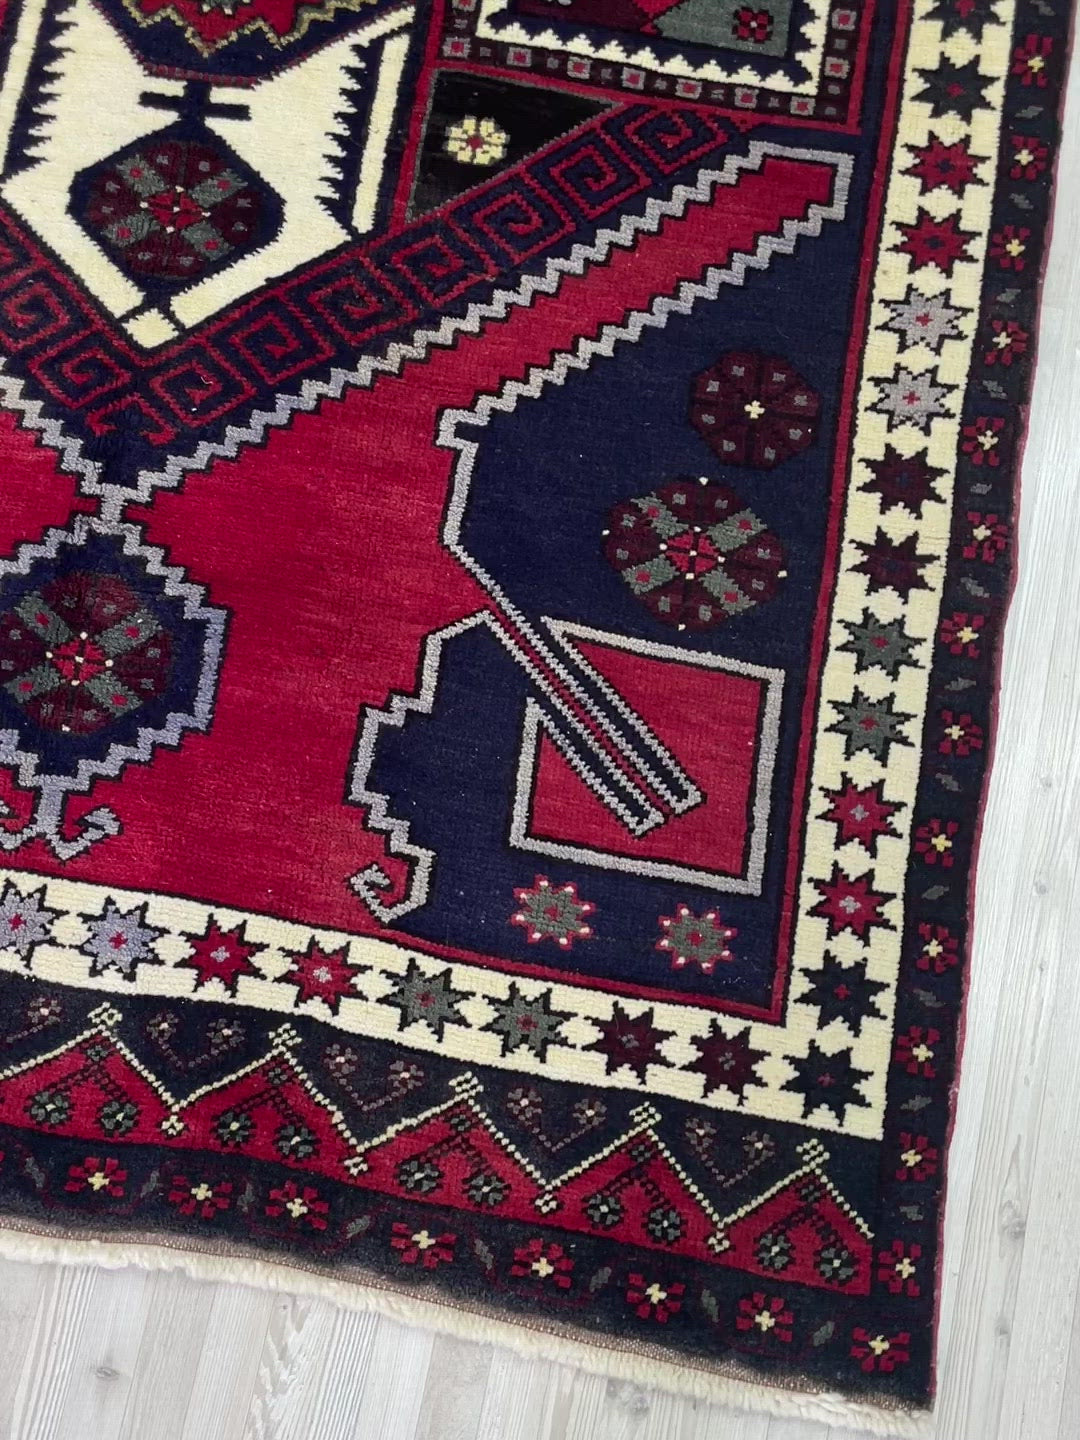 konya karapinar turkish rug shop palo alto oriental rugs berkeley vintage rug shop san francisco bay area buy rugs online california 